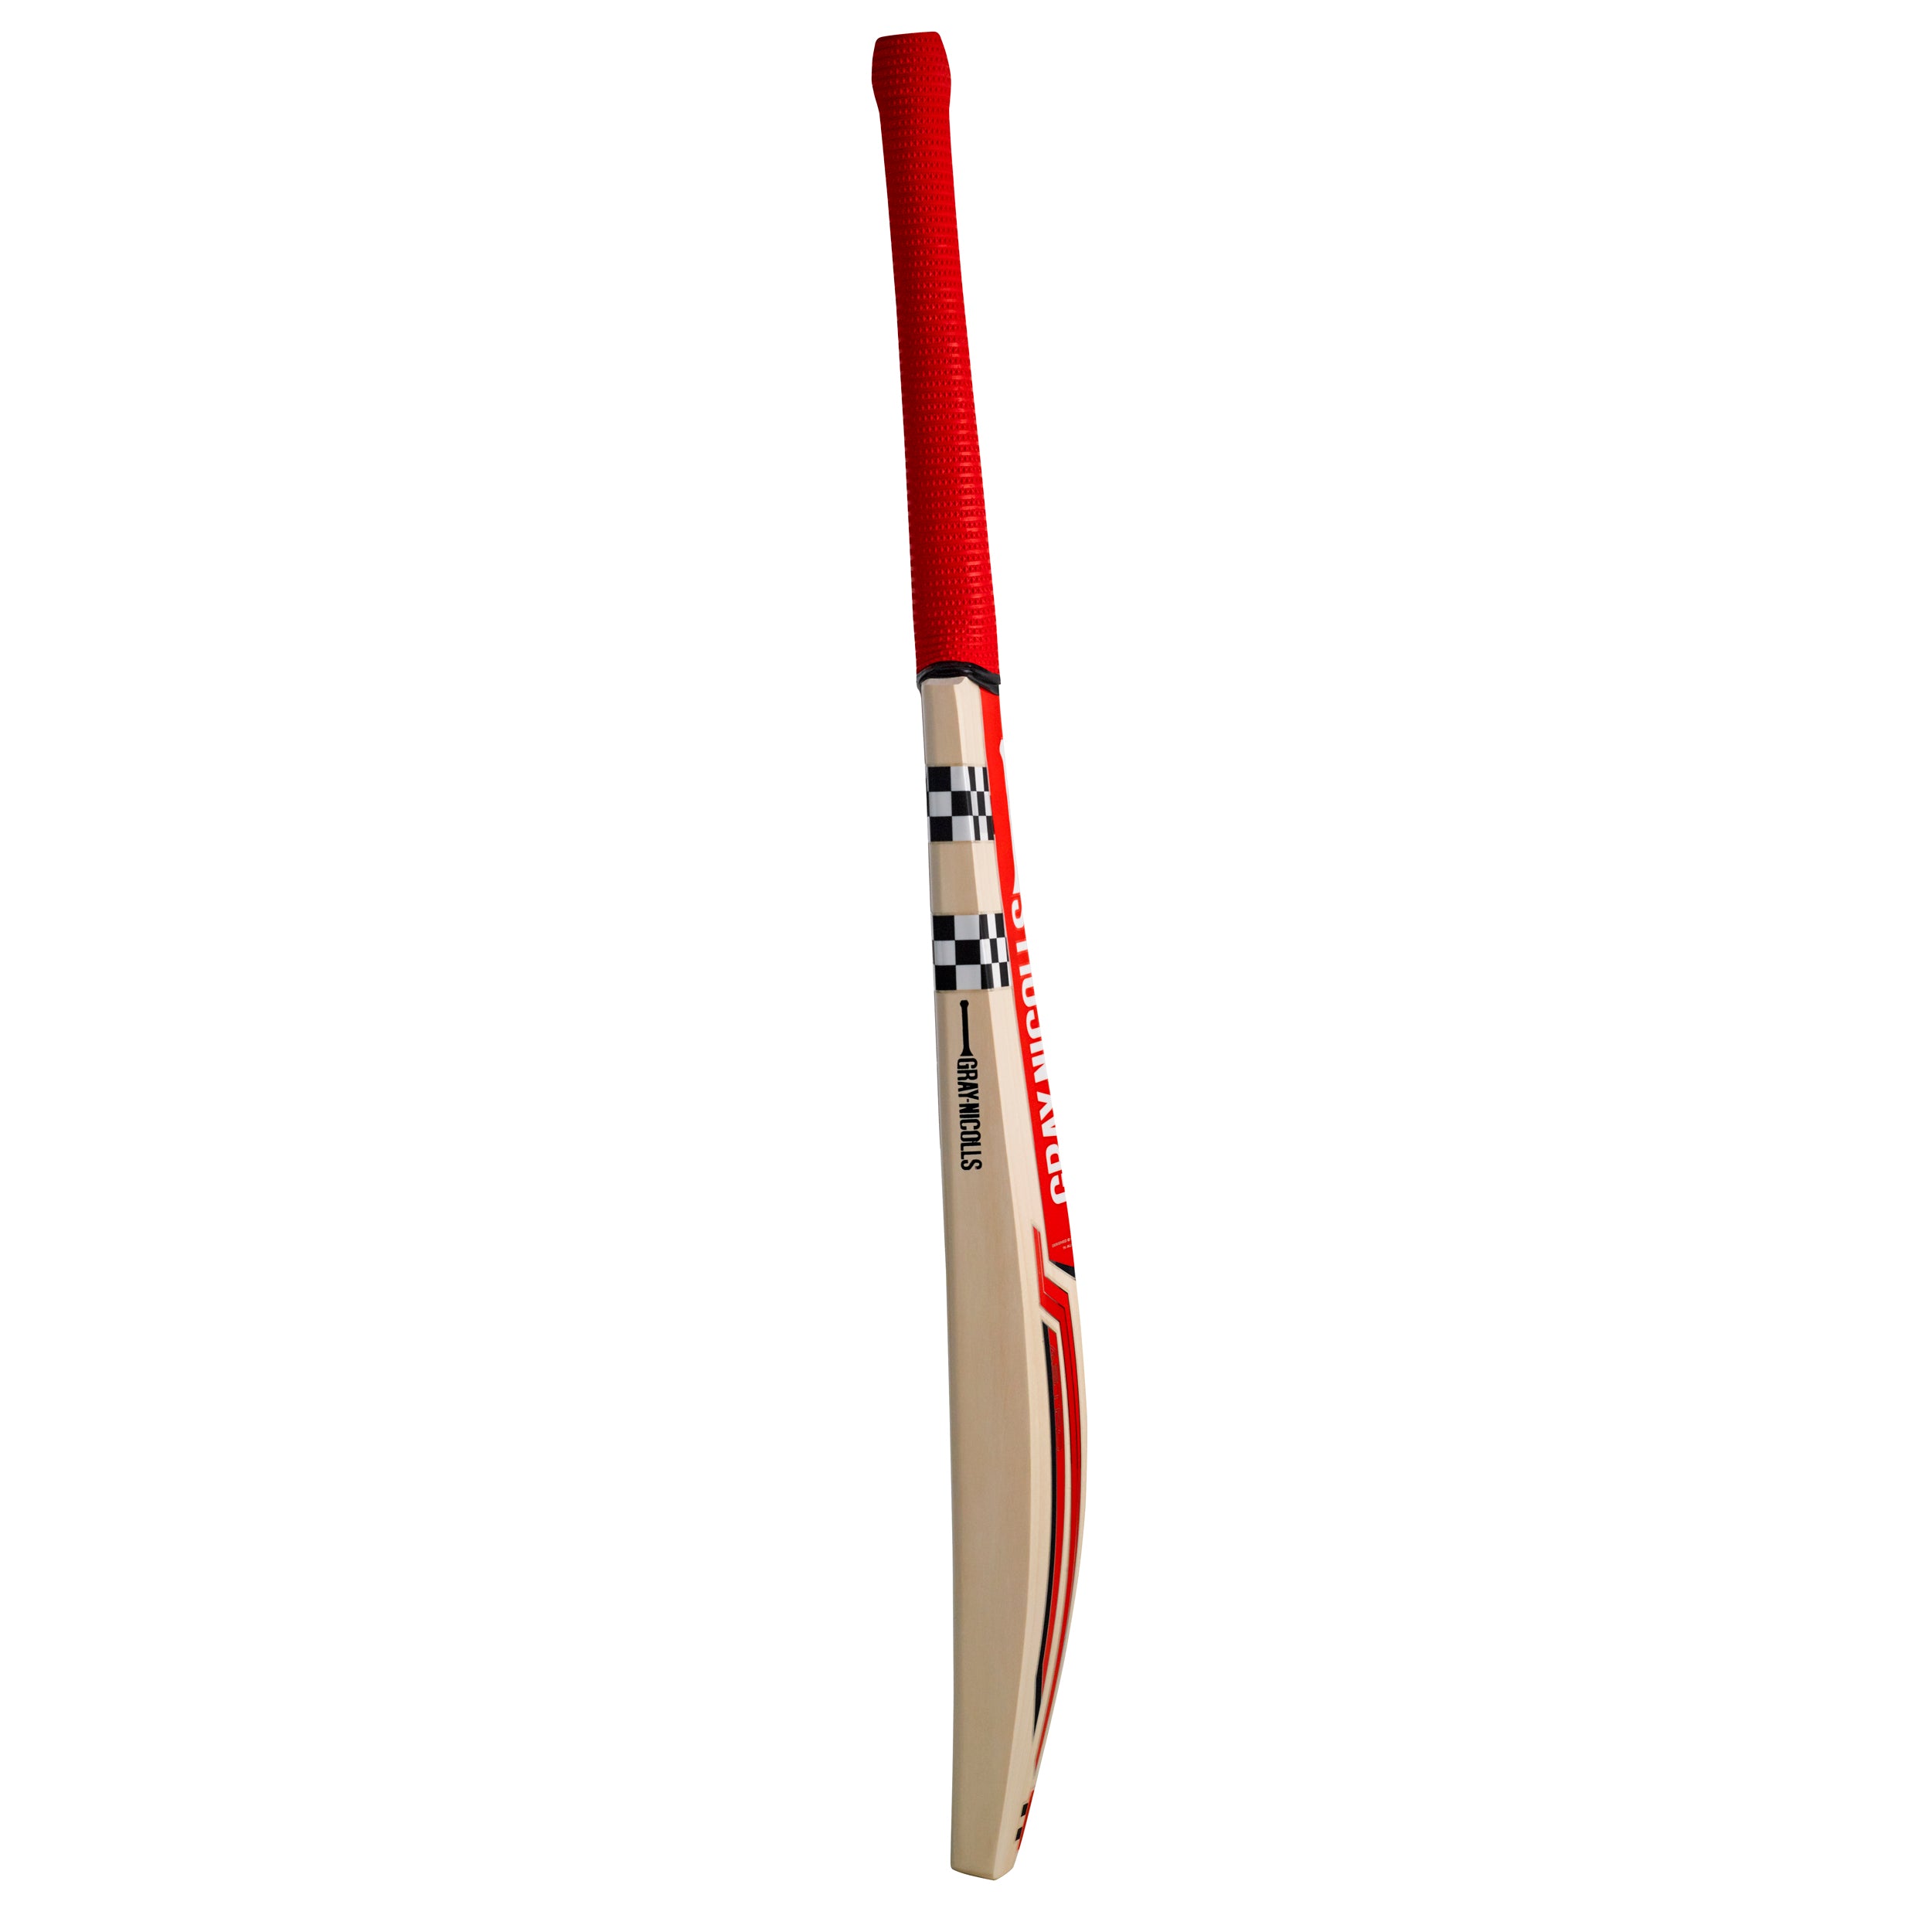 Gray-Nicolls Astro 800 English Willow Senior Cricket Bat